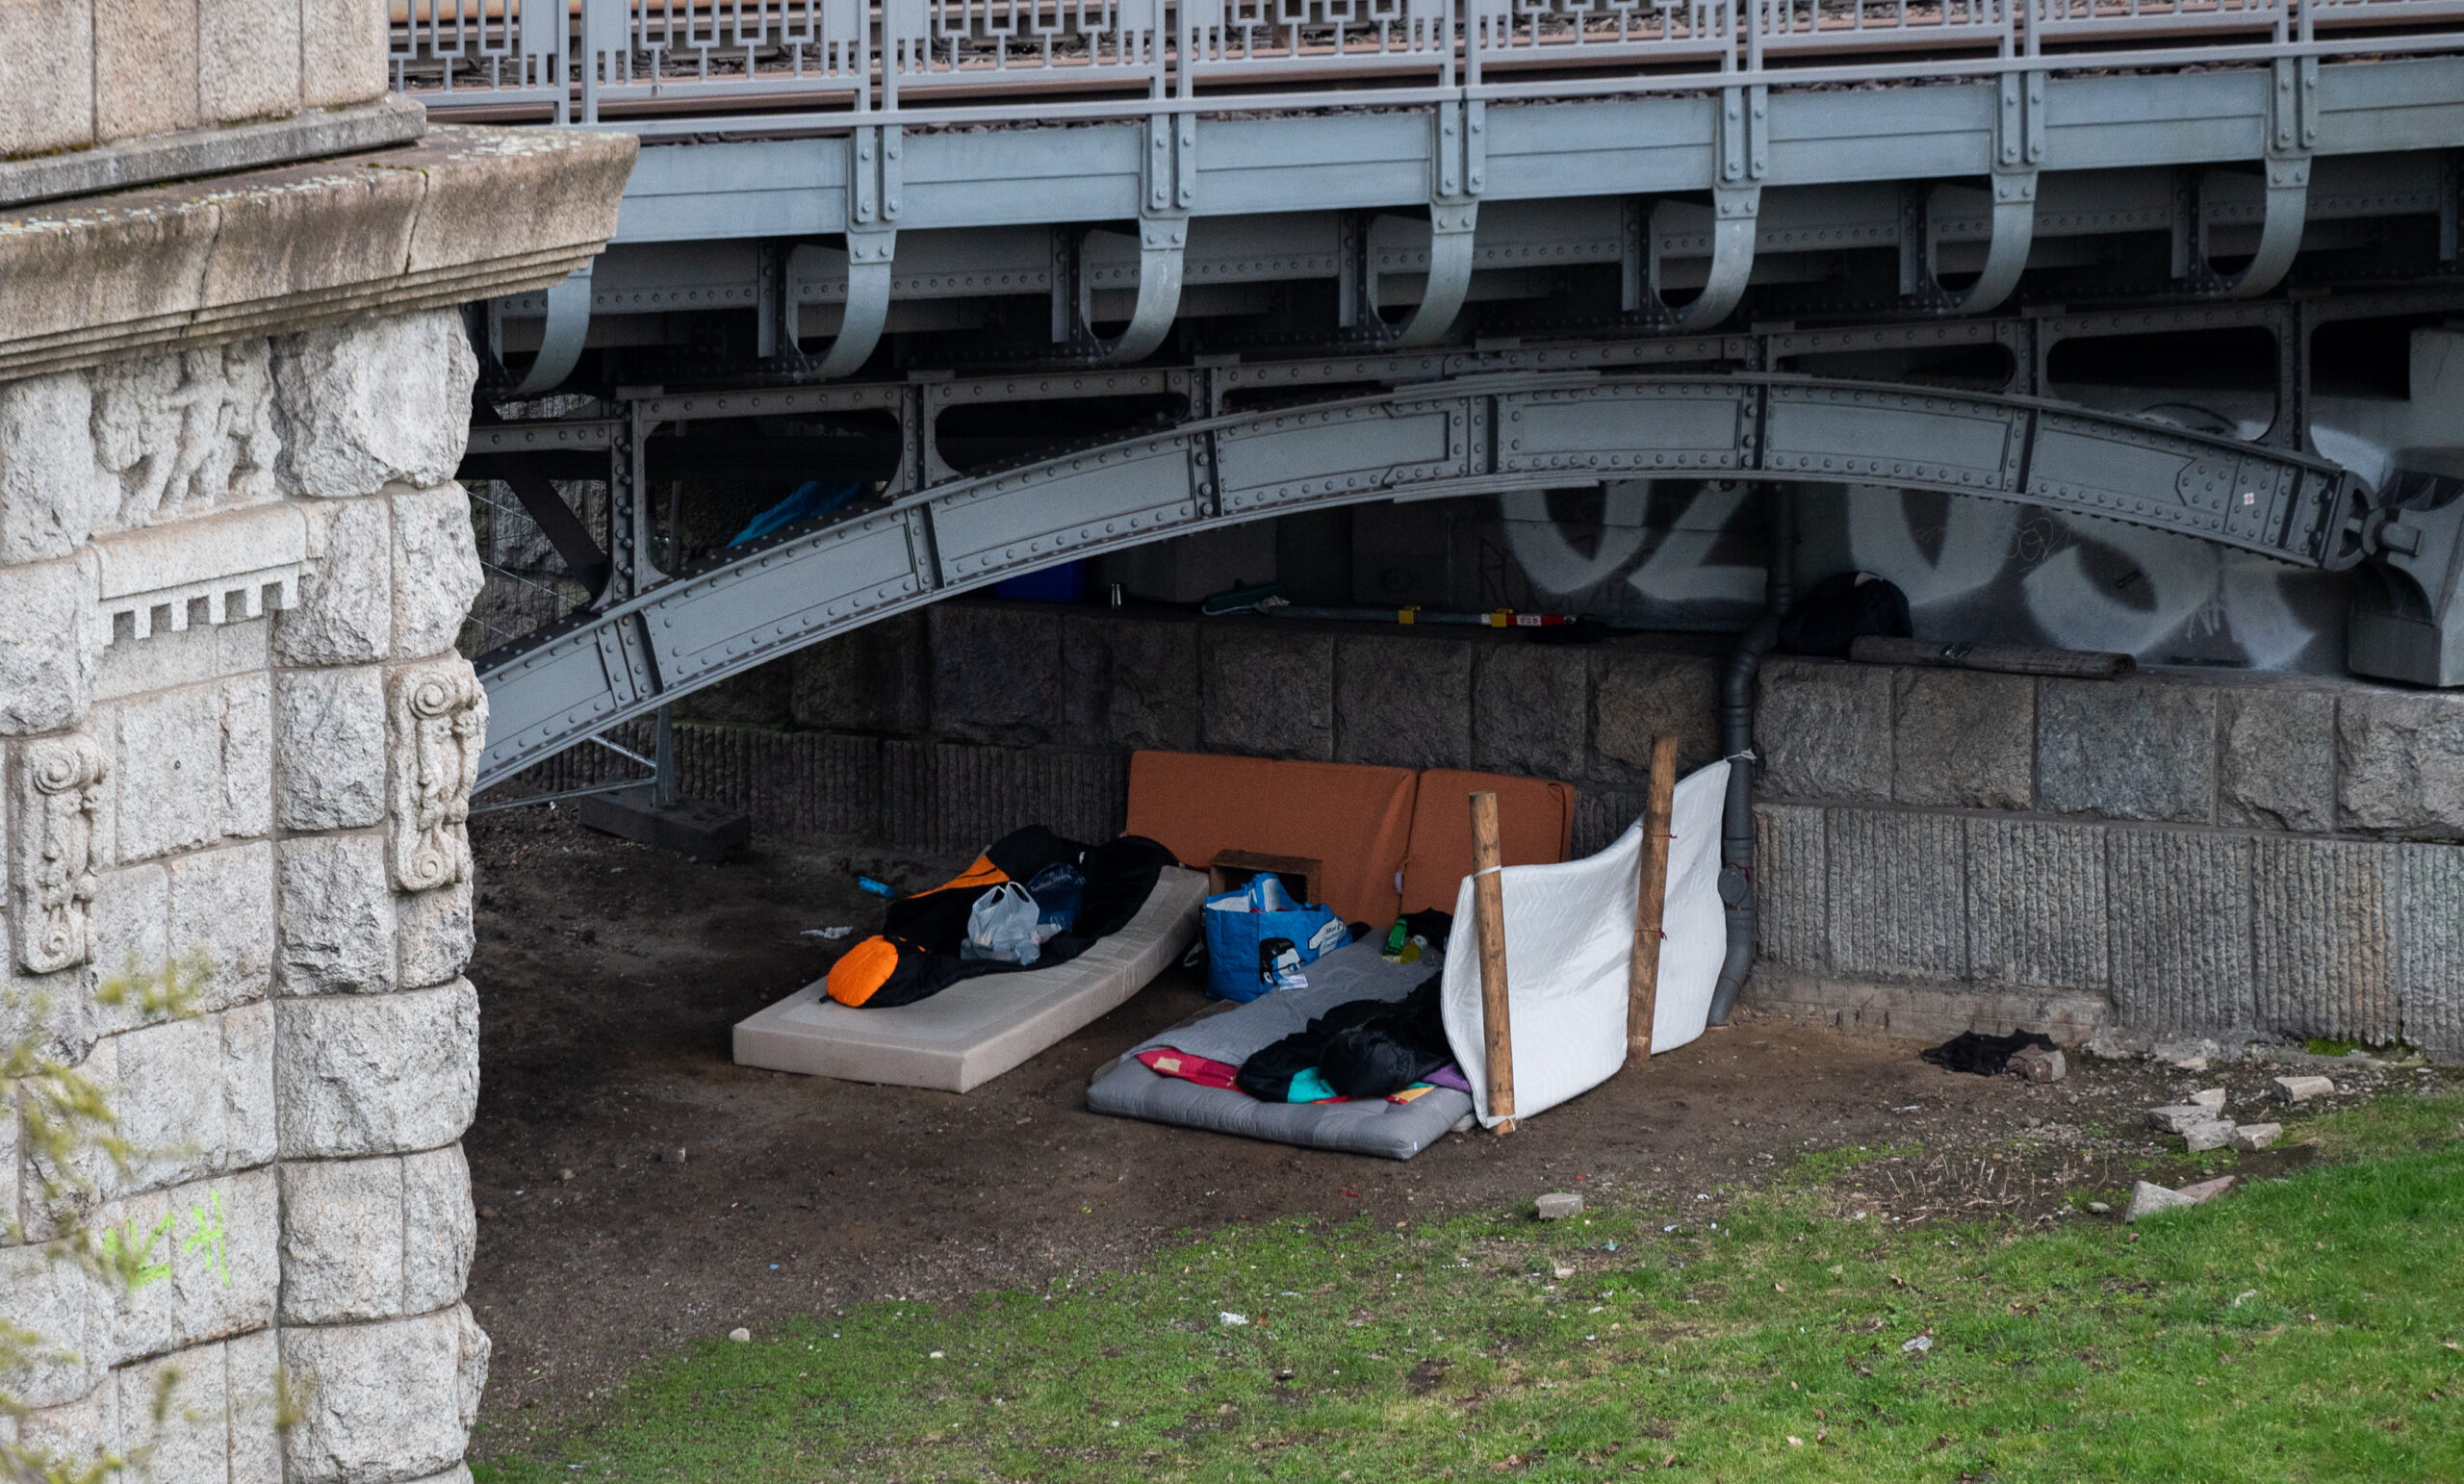 Obdachlose Menschen haben unter eine Brücke ihr Lager aufgeschlagen. In Altona wurde ein solcher, permanenter Schlafplatz nun geräumt.